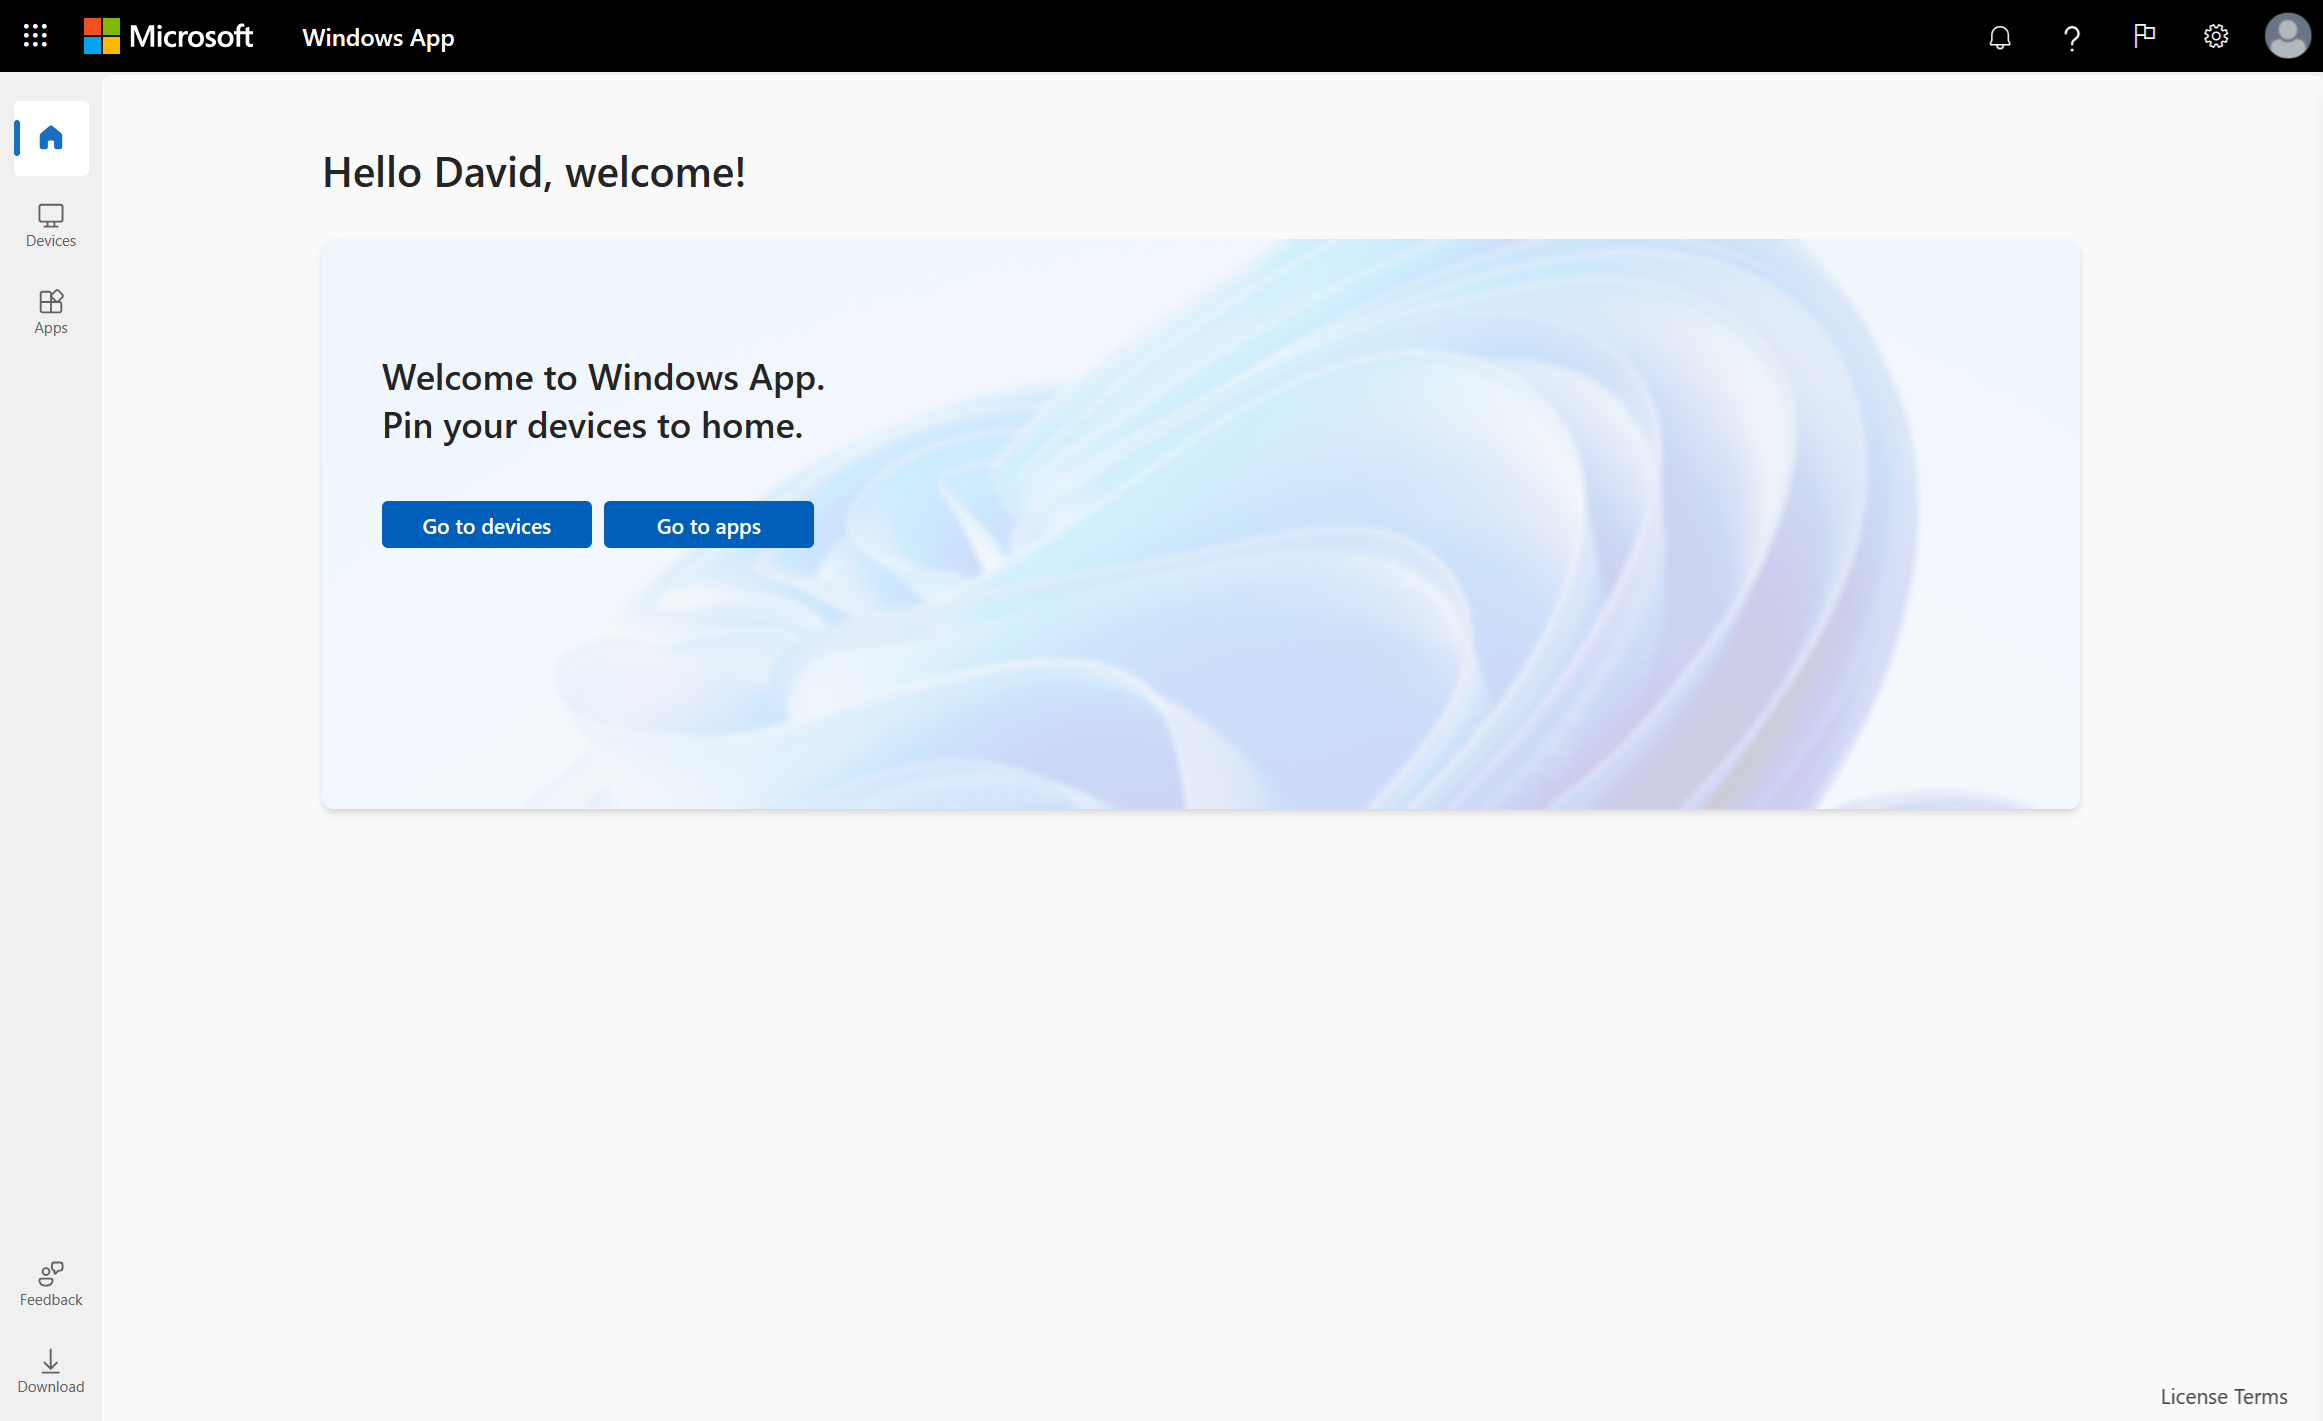 لقطة شاشة تعرض علامة التبويب الرئيسية لتطبيق Windows في مستعرض ويب باستخدام Azure Virtual Desktop.